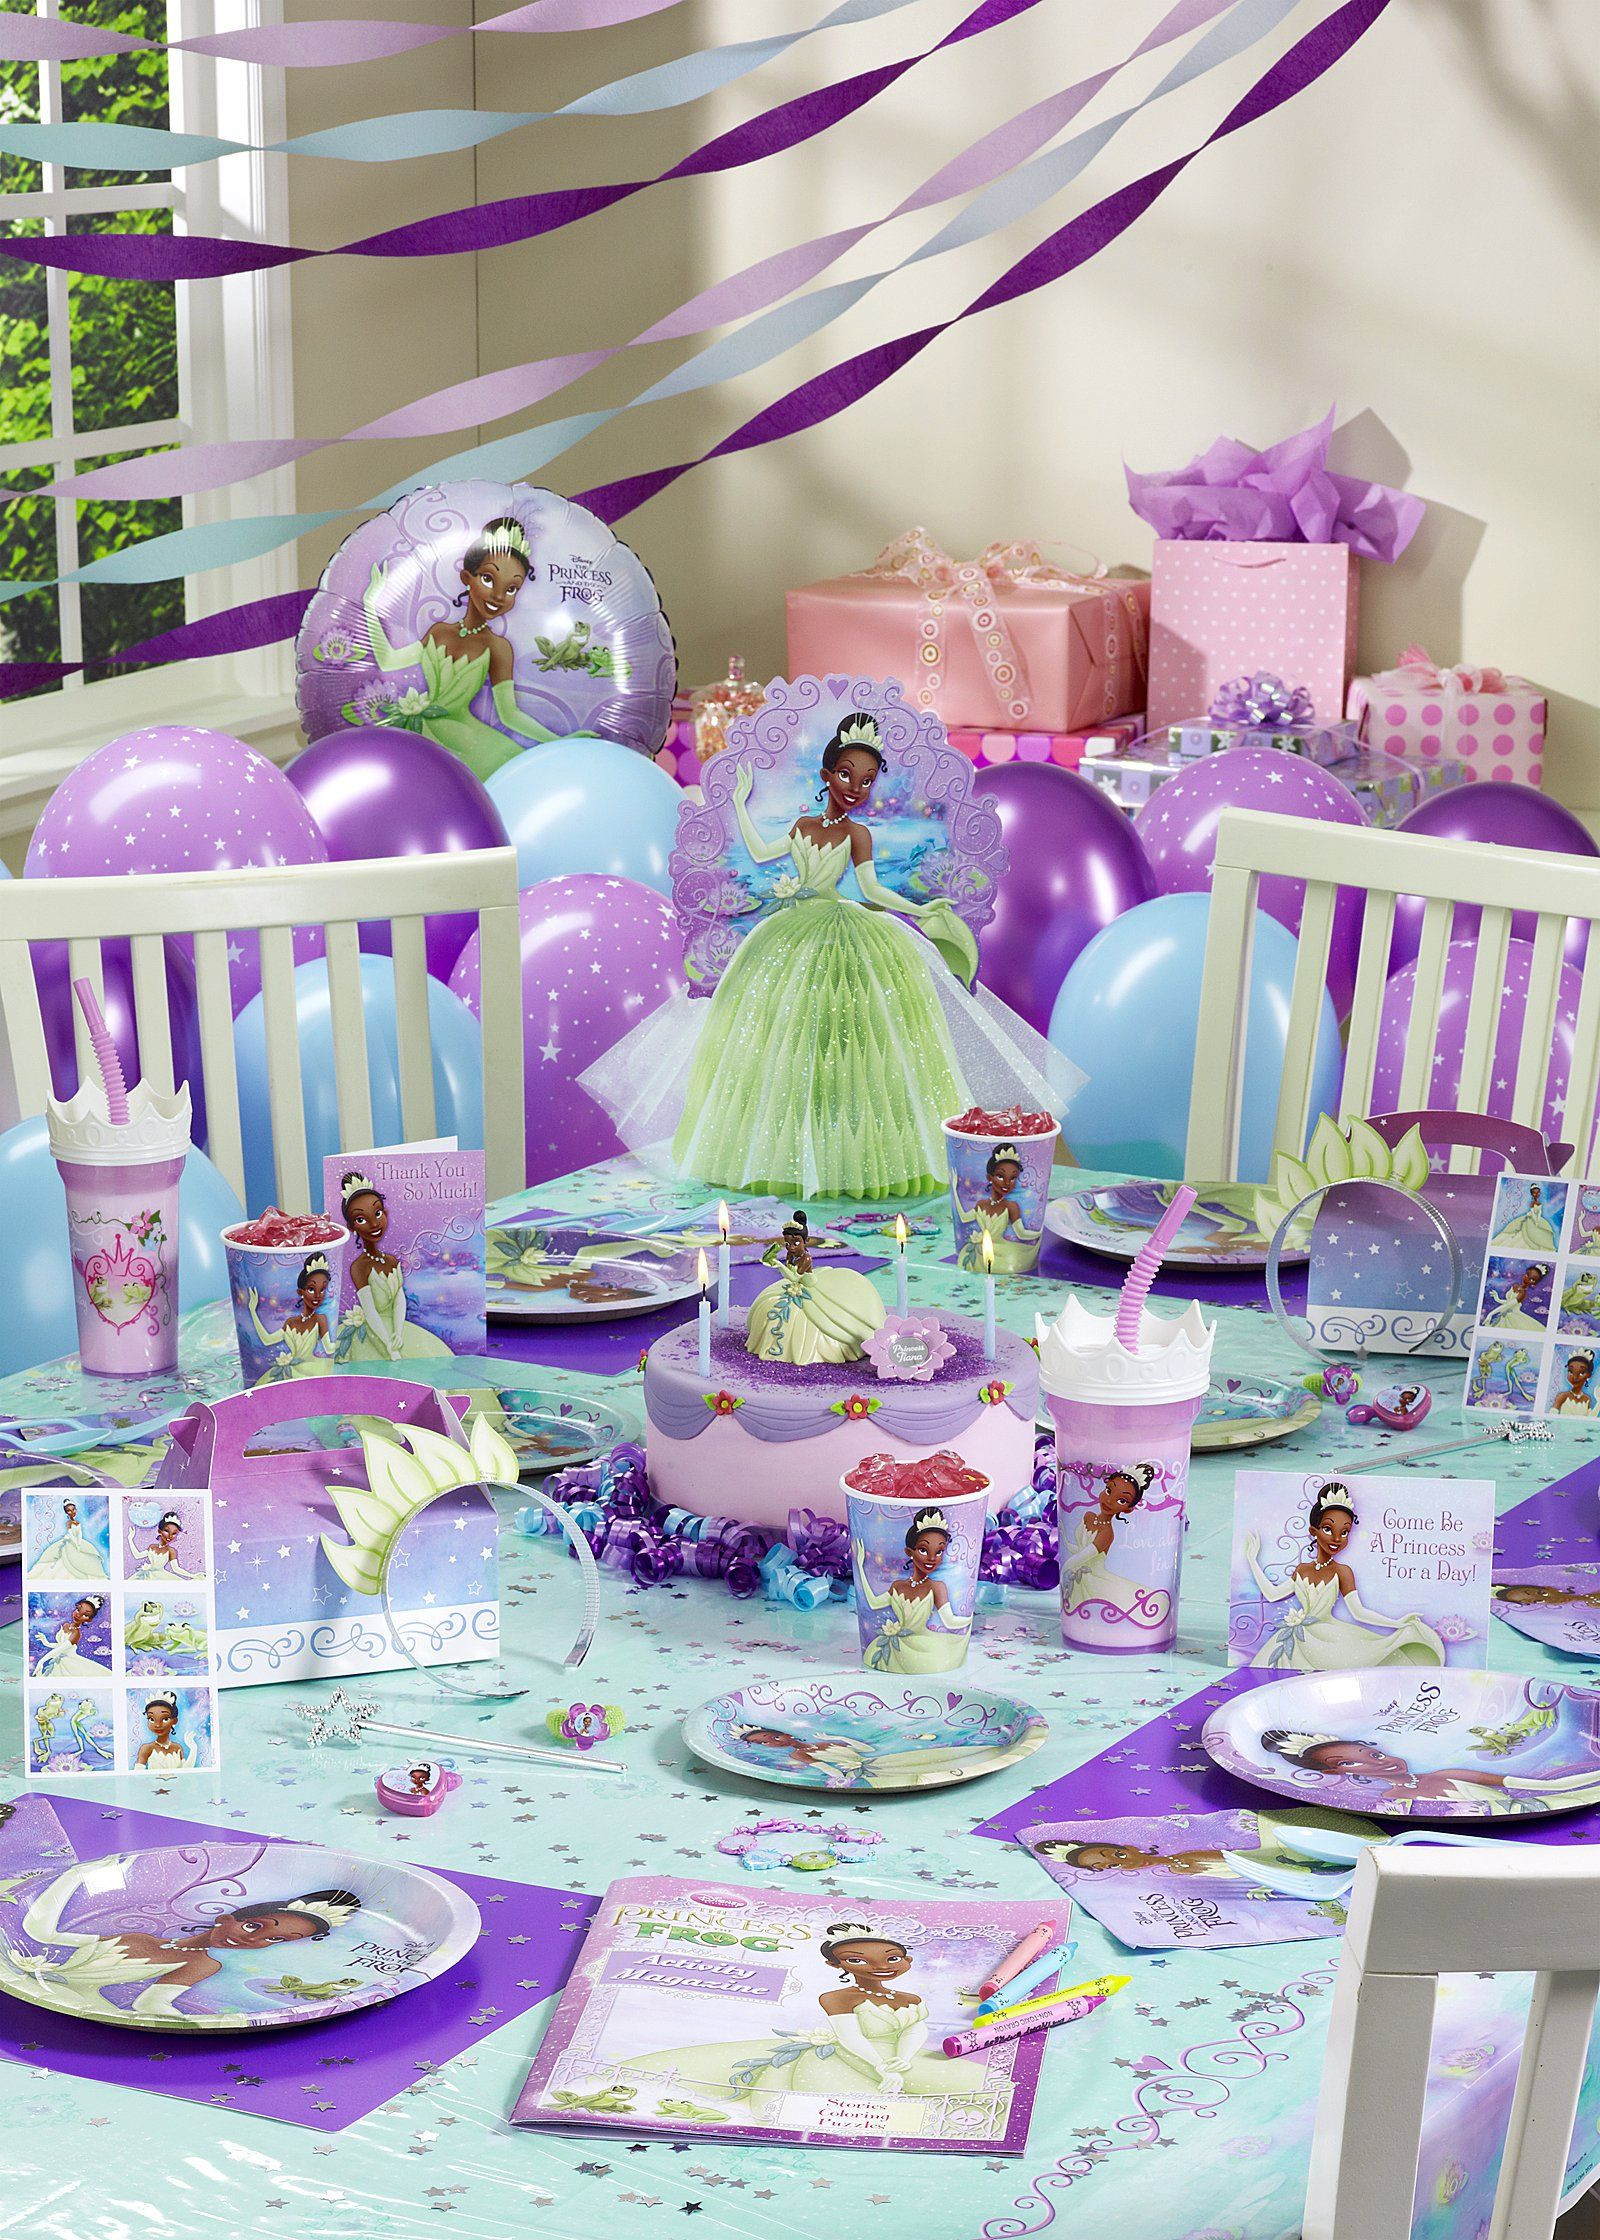 Princess Tiana Birthday Decorations
 Princess Tiana Birthday Party Decorations